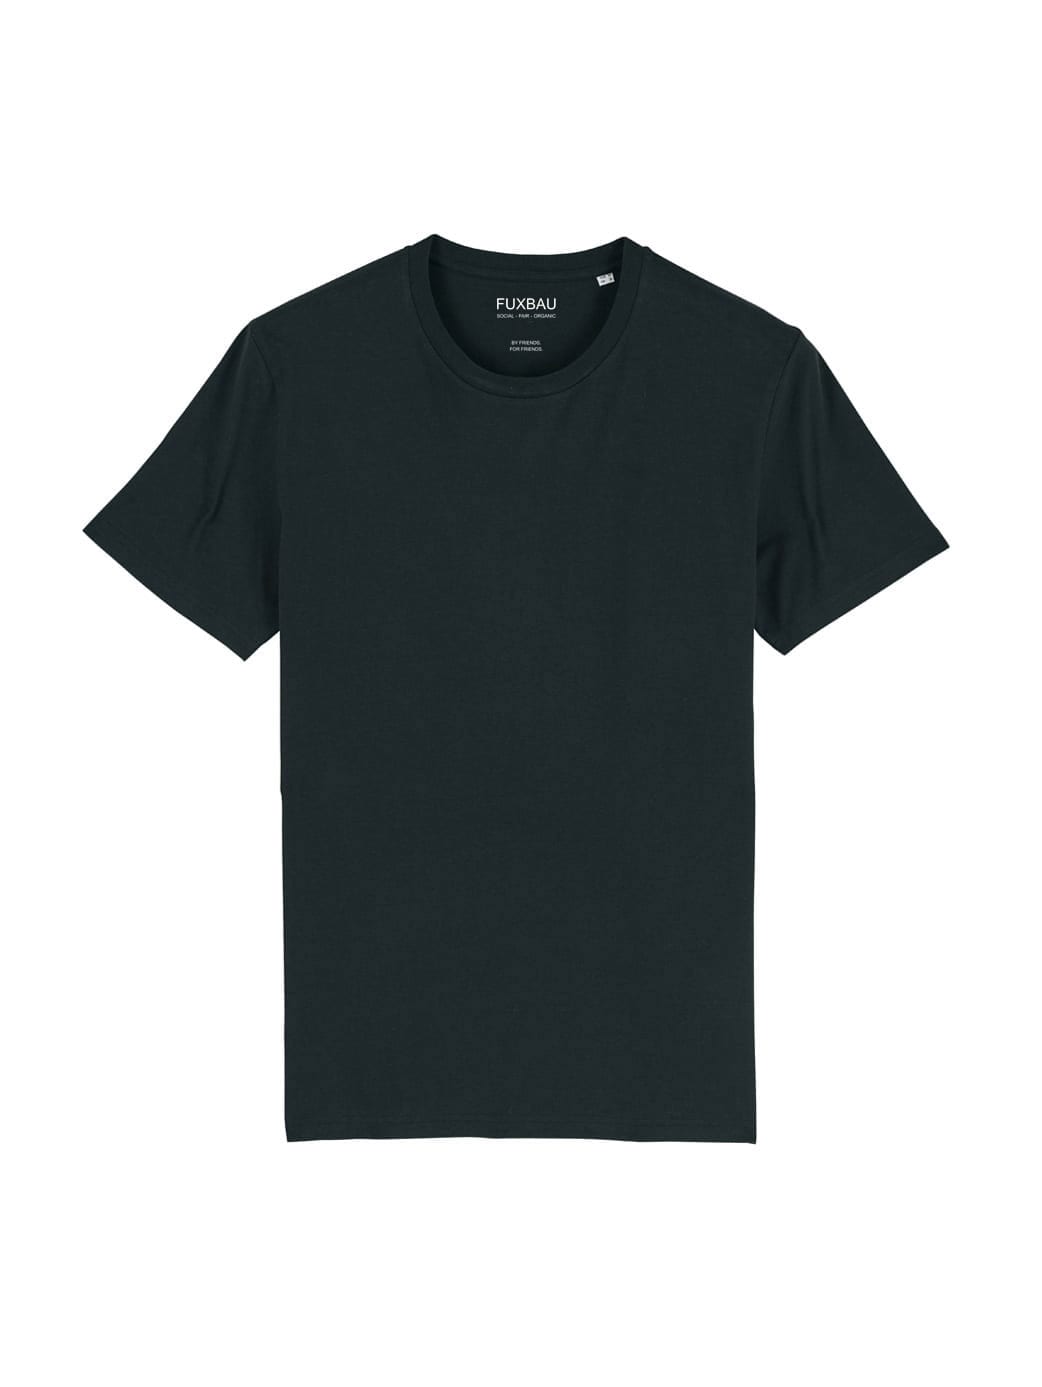 Faires und nachhaltiges schweres Basic T-Shirt von FUXBAU in schwarz aus 100% Biobaumwolle